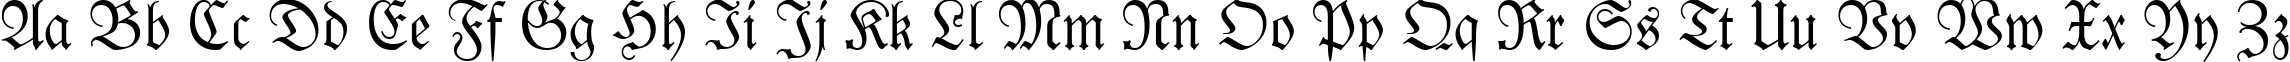 Пример написания английского алфавита шрифтом Fraktur BT